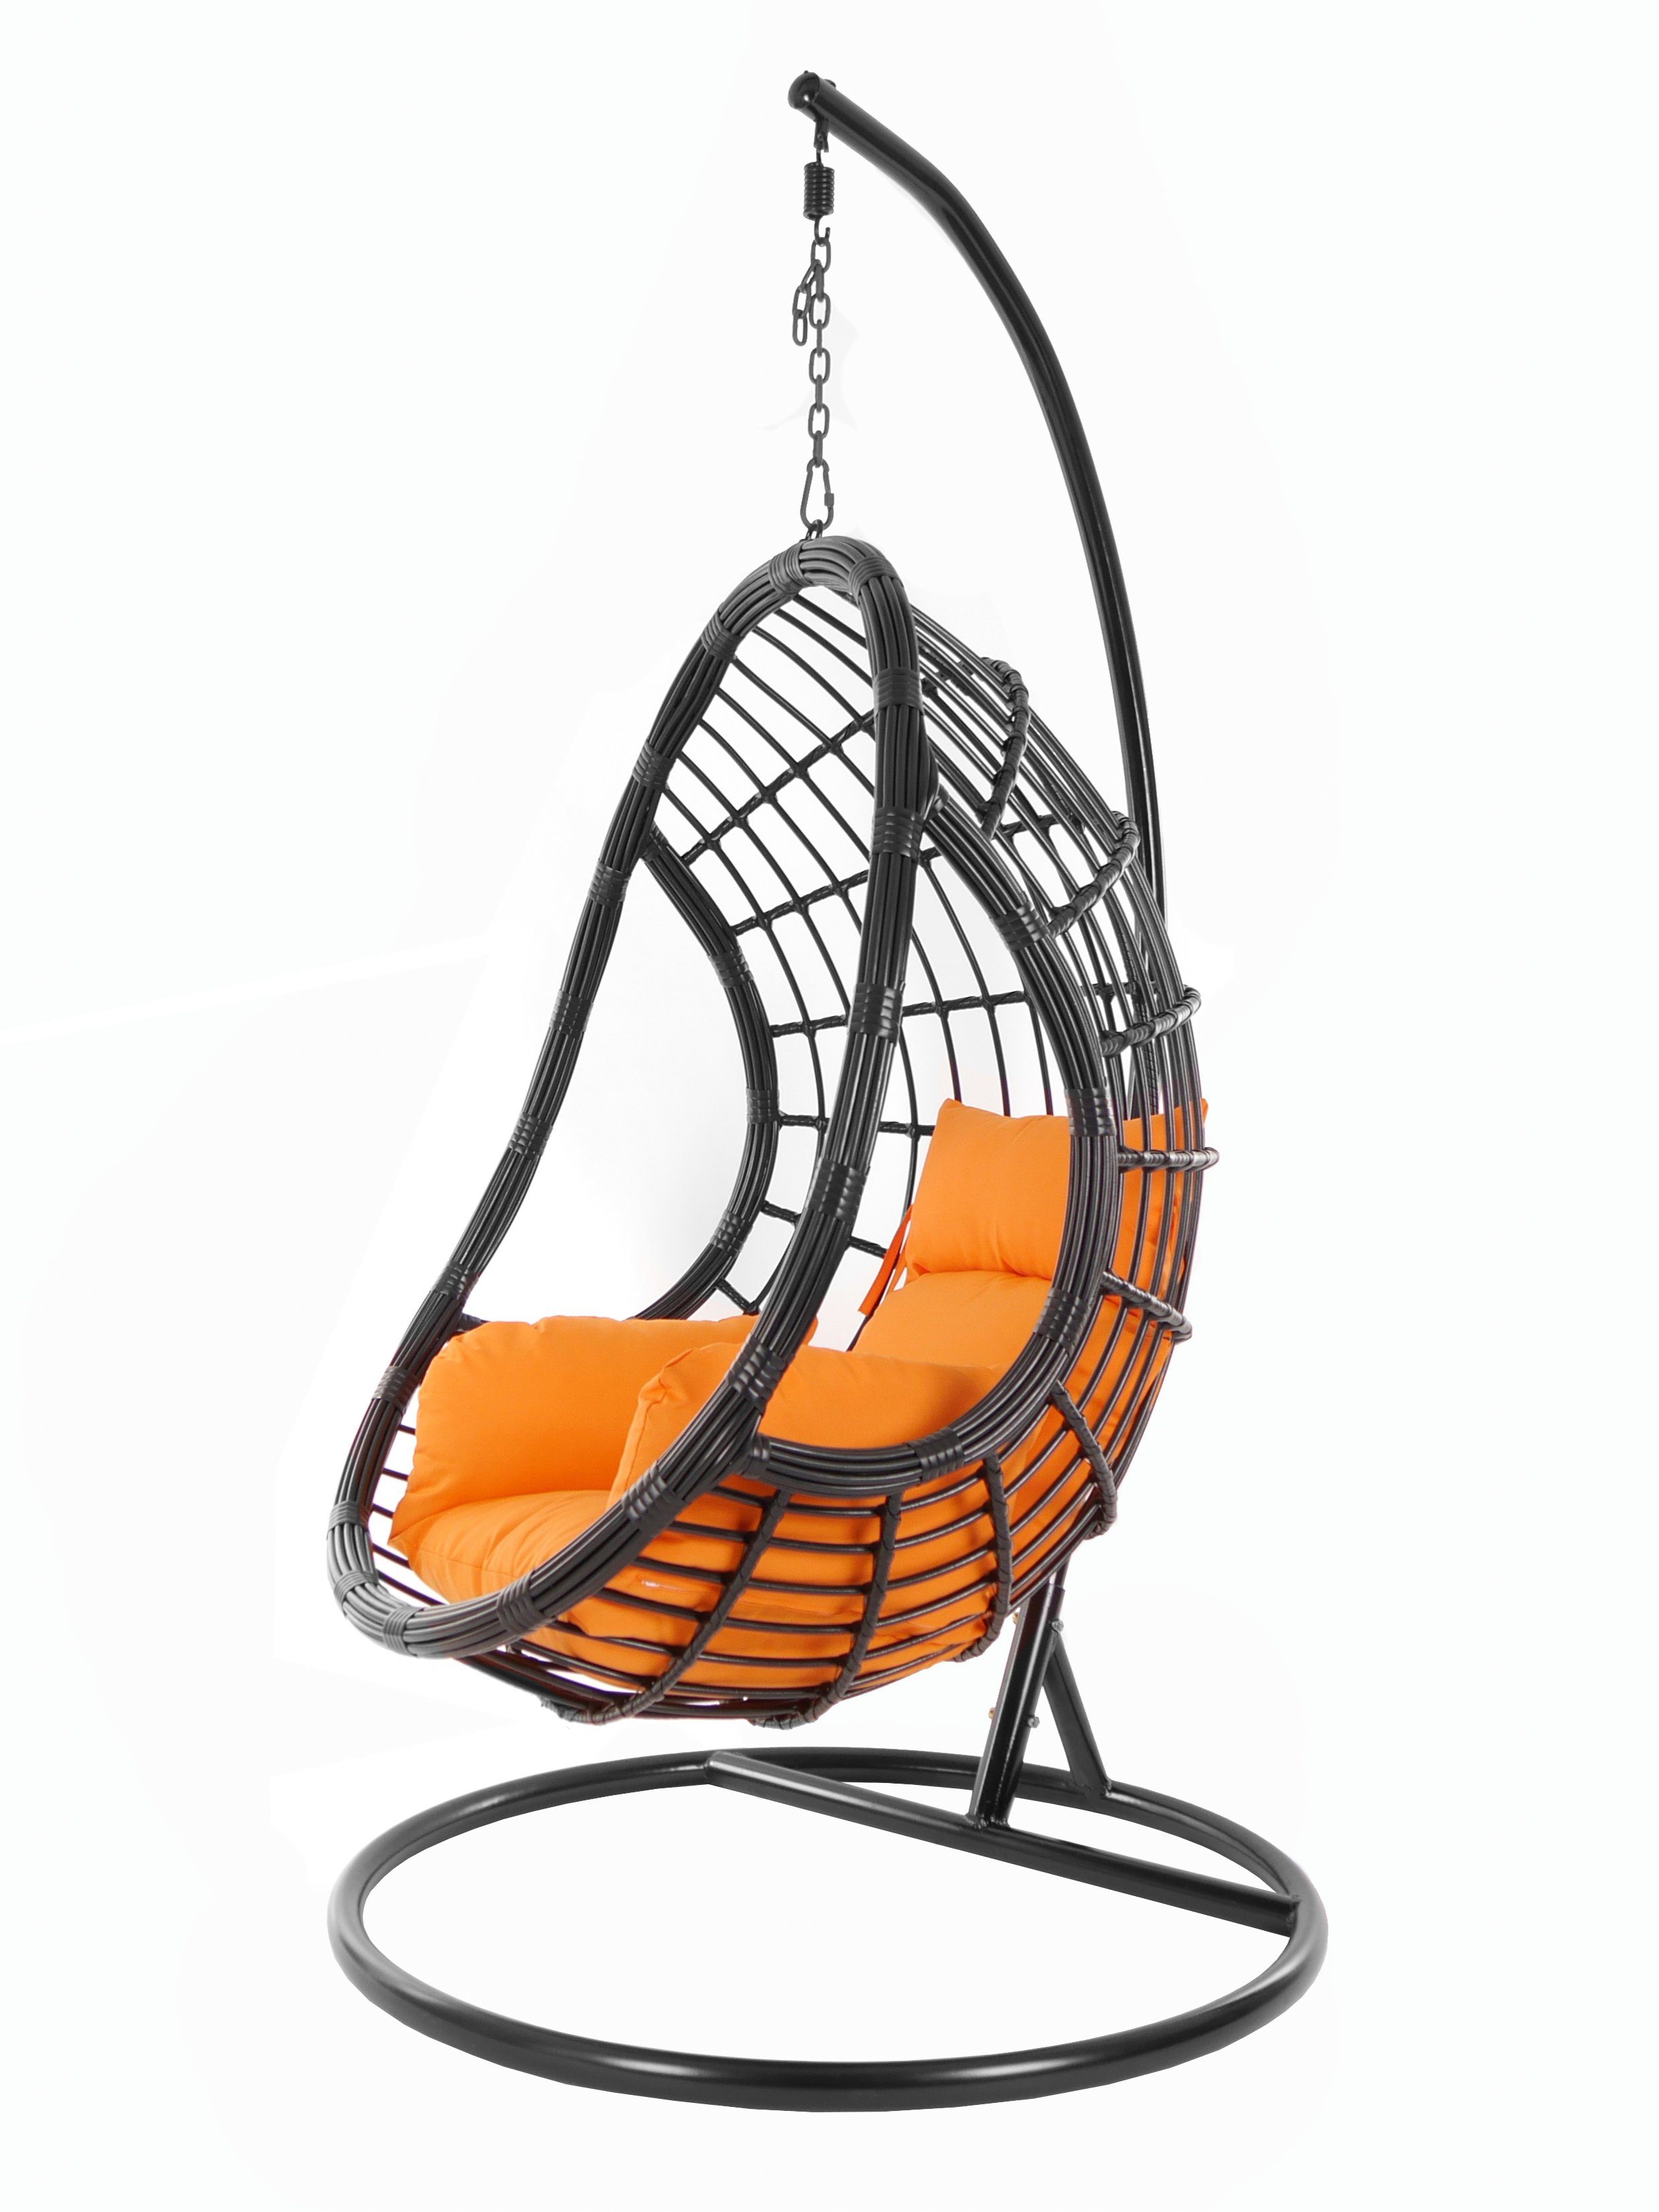 KIDEO Hängesessel PALMANOVA black, Schwebesessel, Swing Chair, Hängesessel mit Gestell und Kissen, Nest-Kissen orange (3030 tangerine)